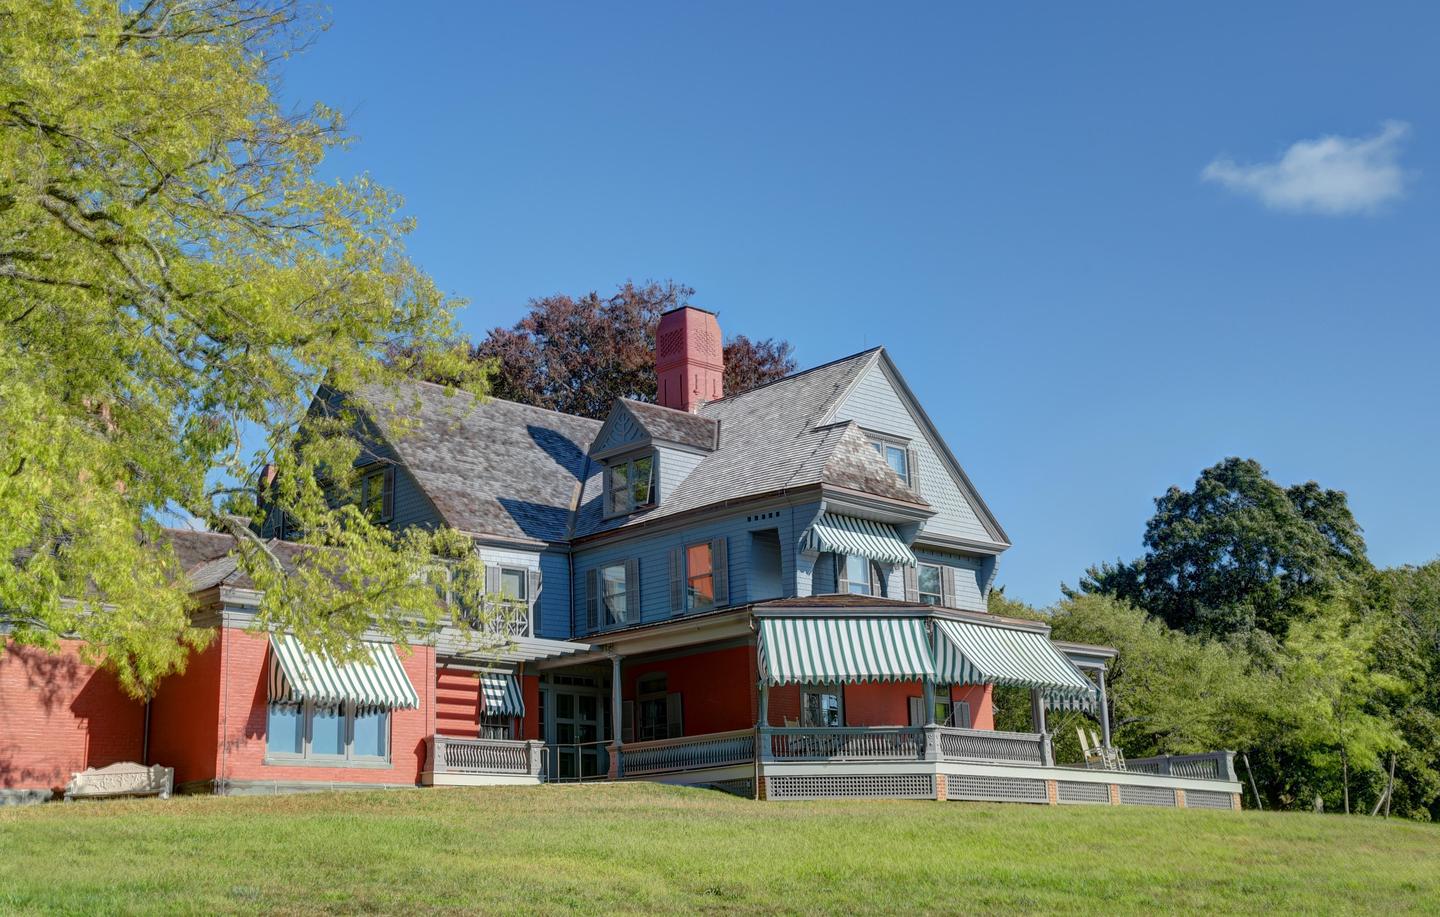 Theodore Roosevelt HomeTheodore Roosevelt Home at Sagamore Hill